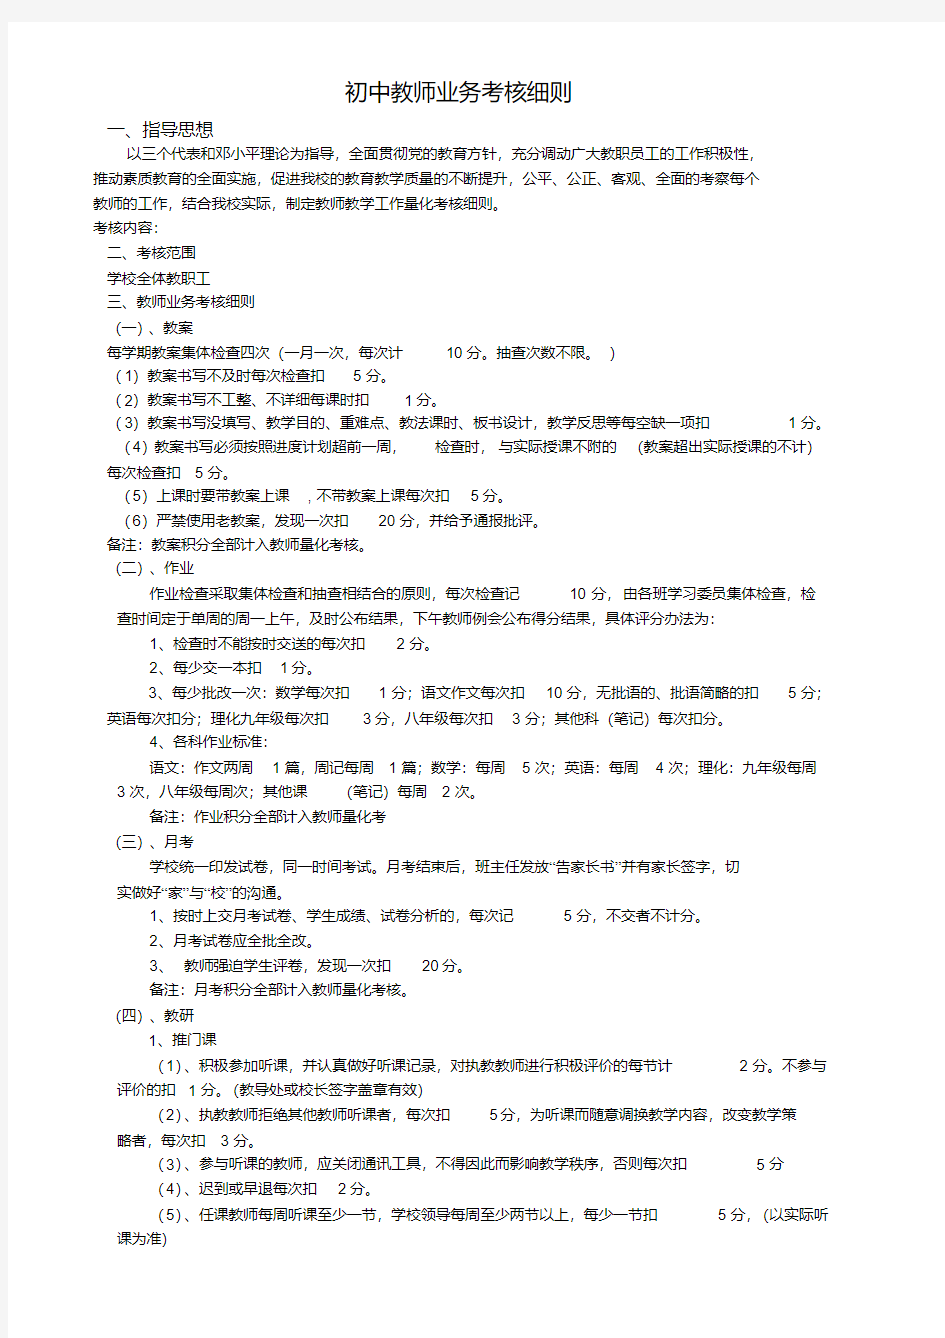 中学教师量化考核细则.pdf